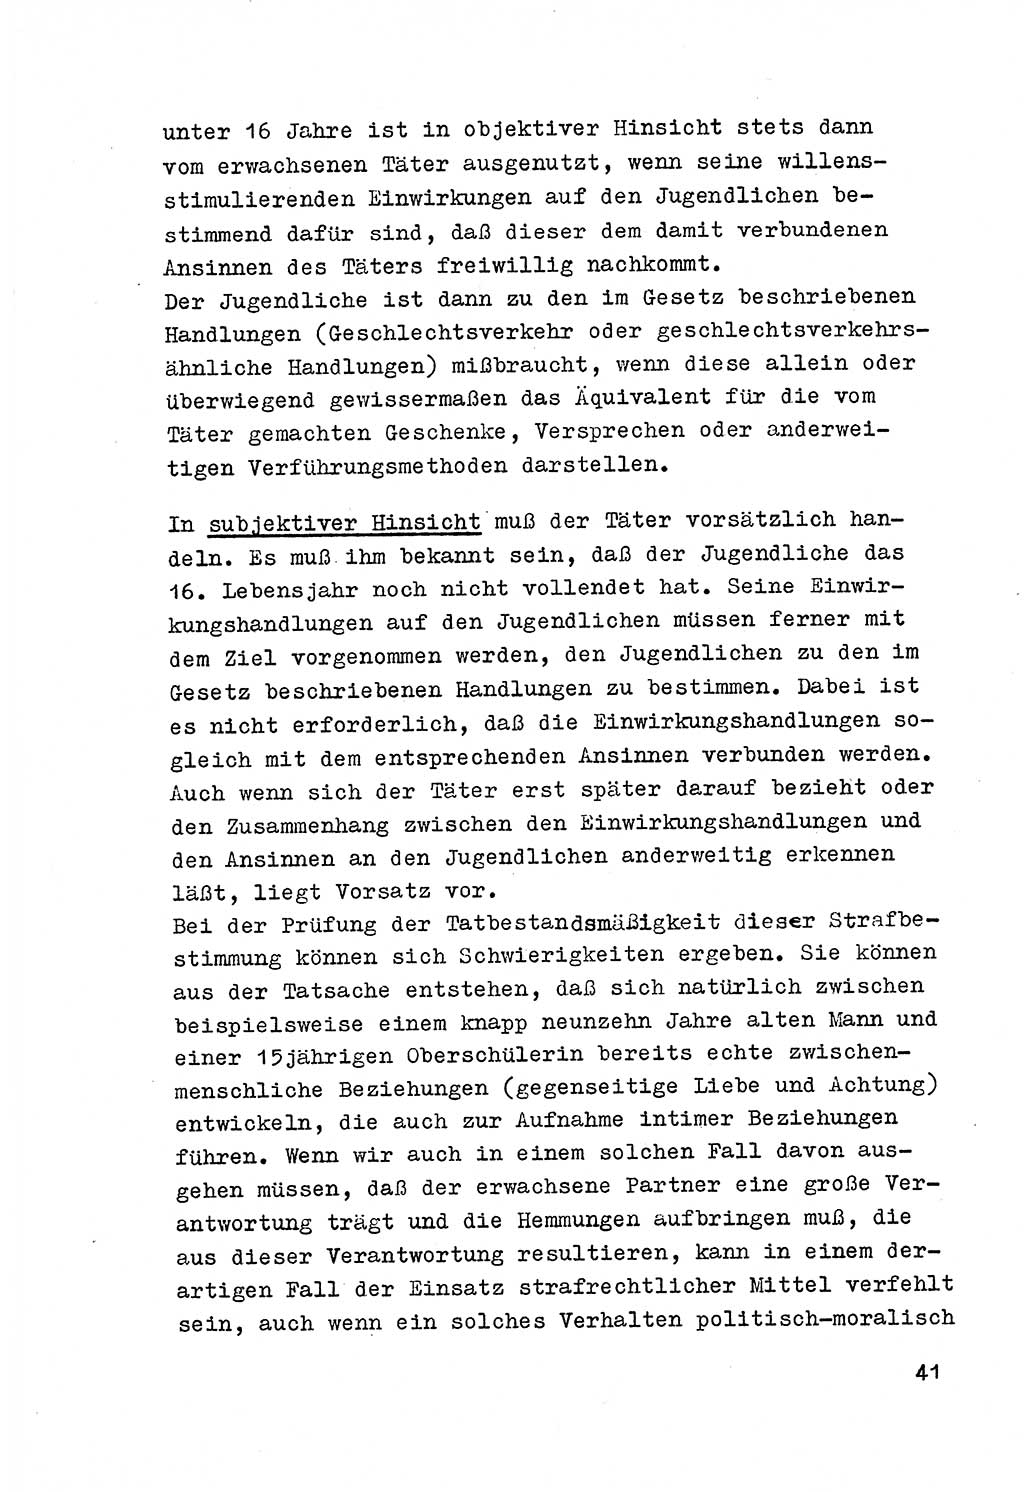 Strafrecht der DDR (Deutsche Demokratische Republik), Besonderer Teil, Lehrmaterial, Heft 4 1969, Seite 41 (Strafr. DDR BT Lehrmat. H. 4 1969, S. 41)